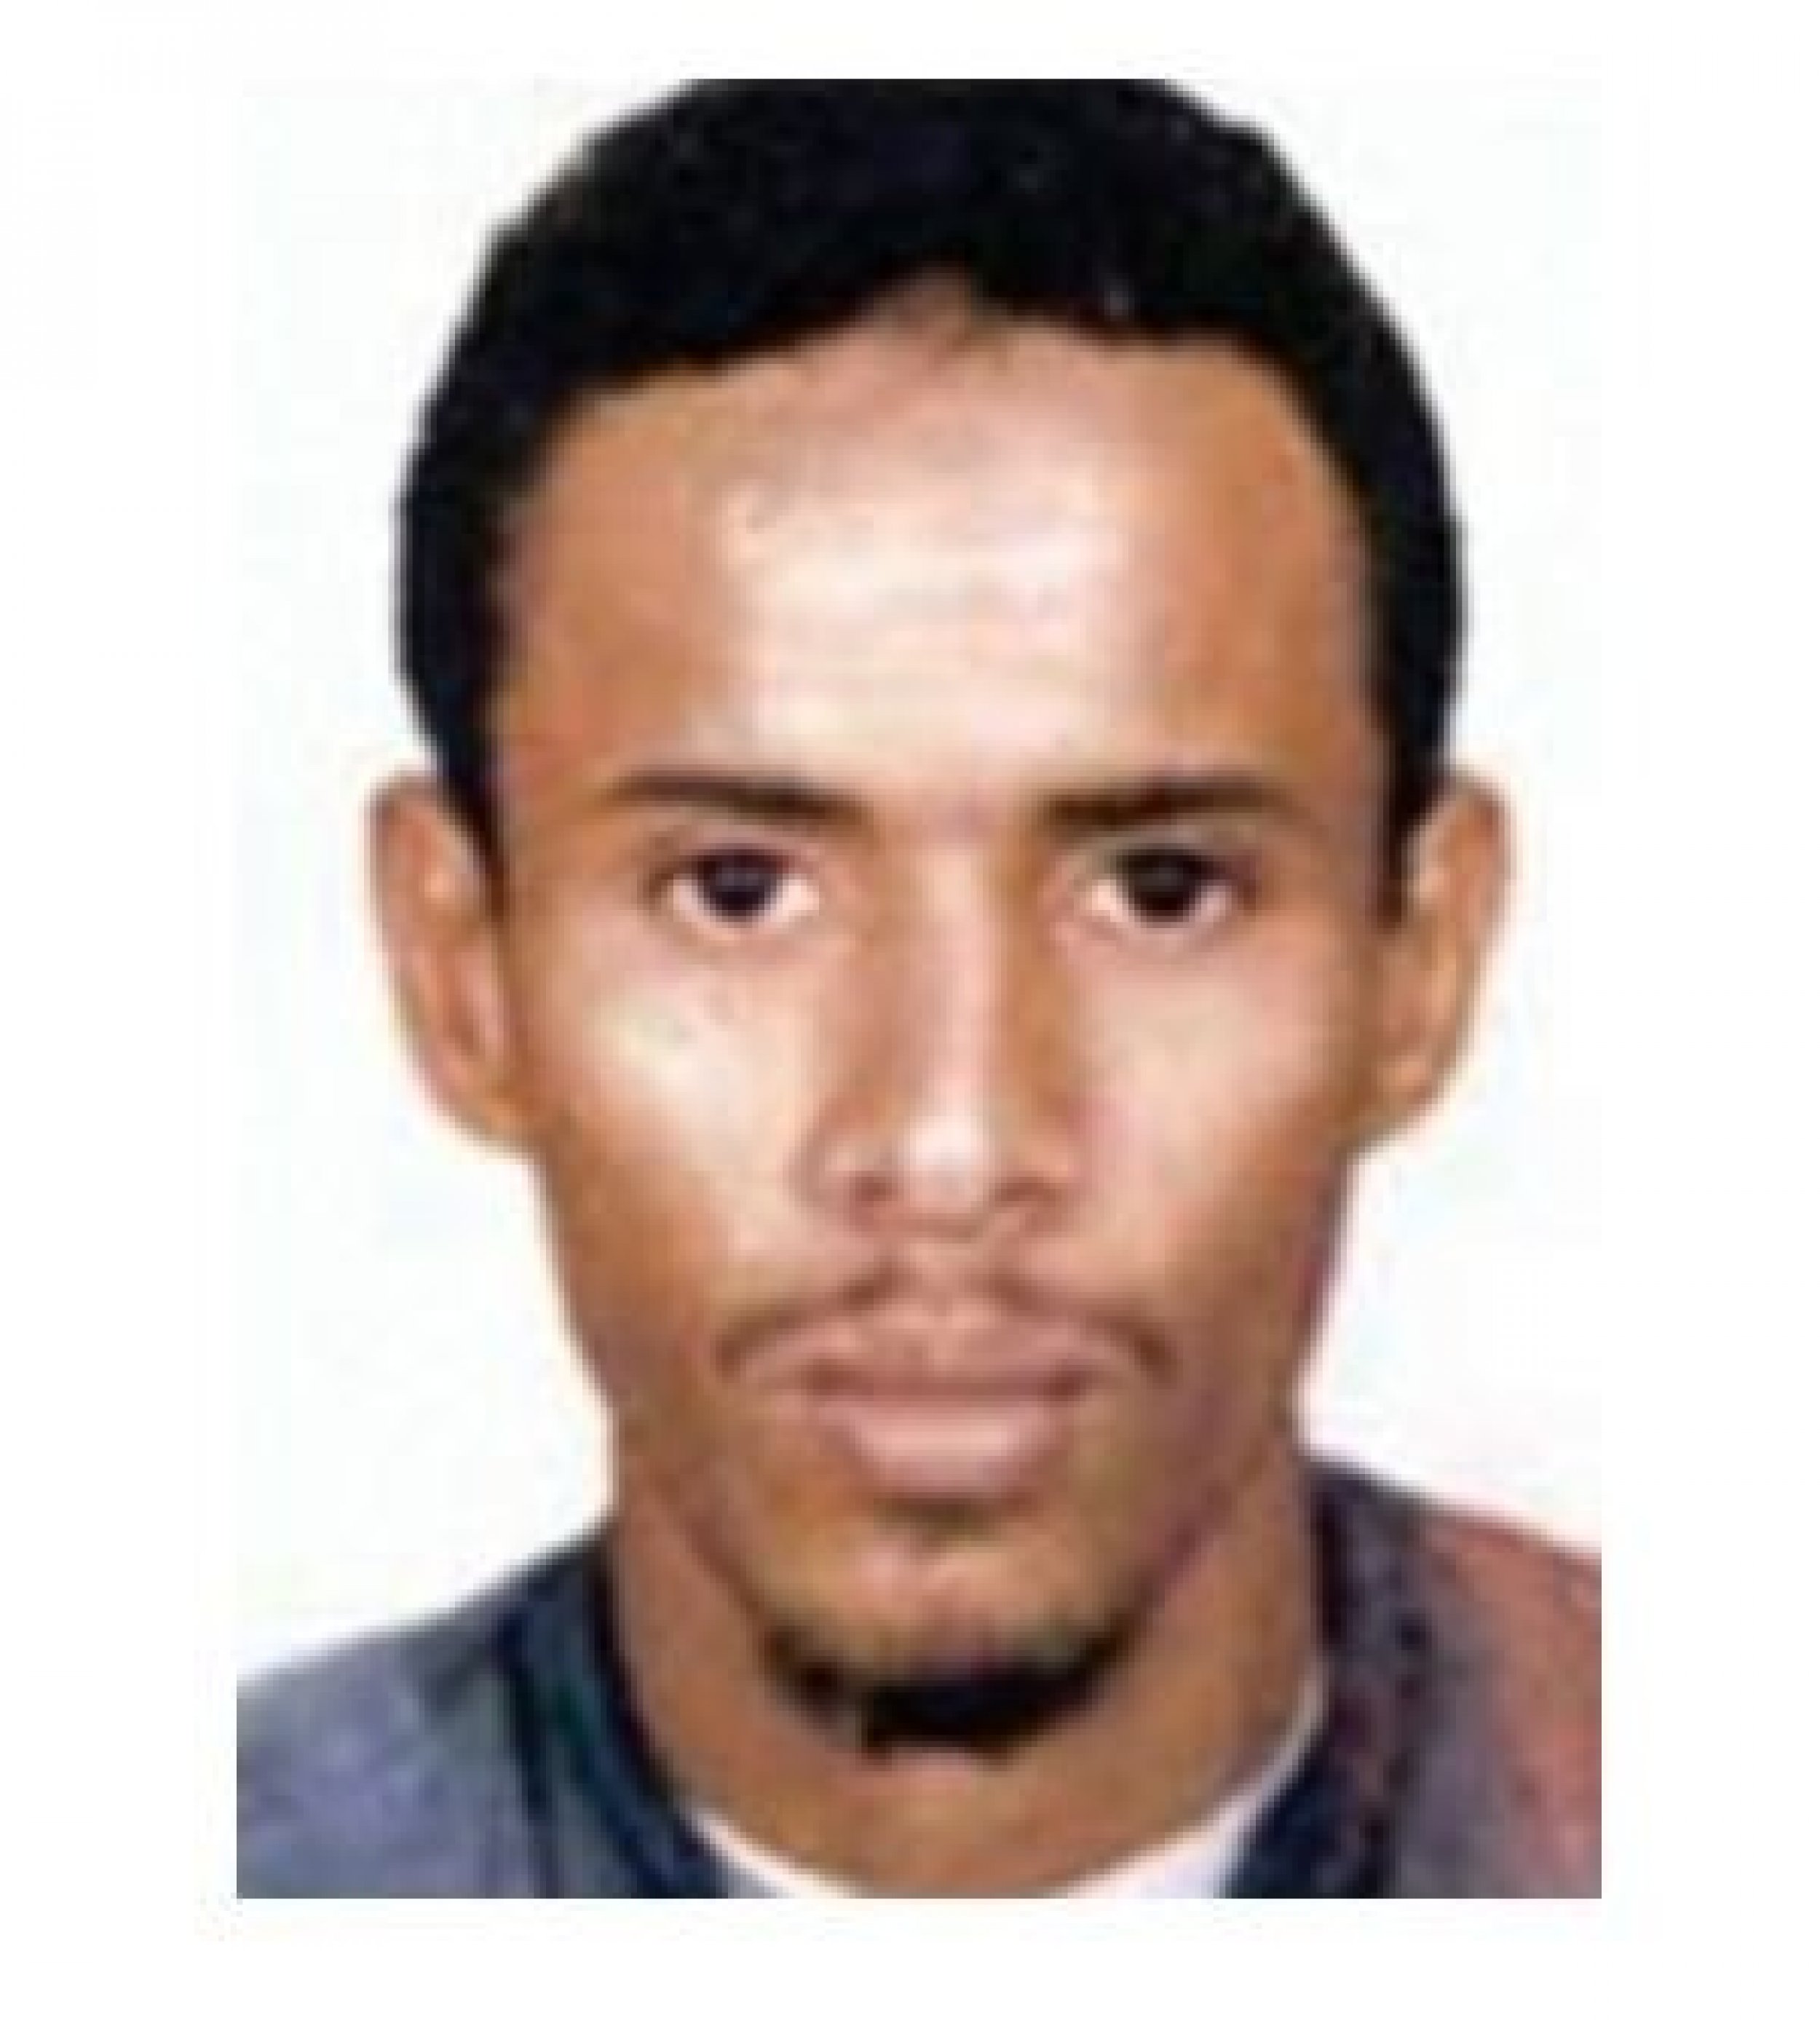 Fahd Mohammed Ahmed Al-Quso